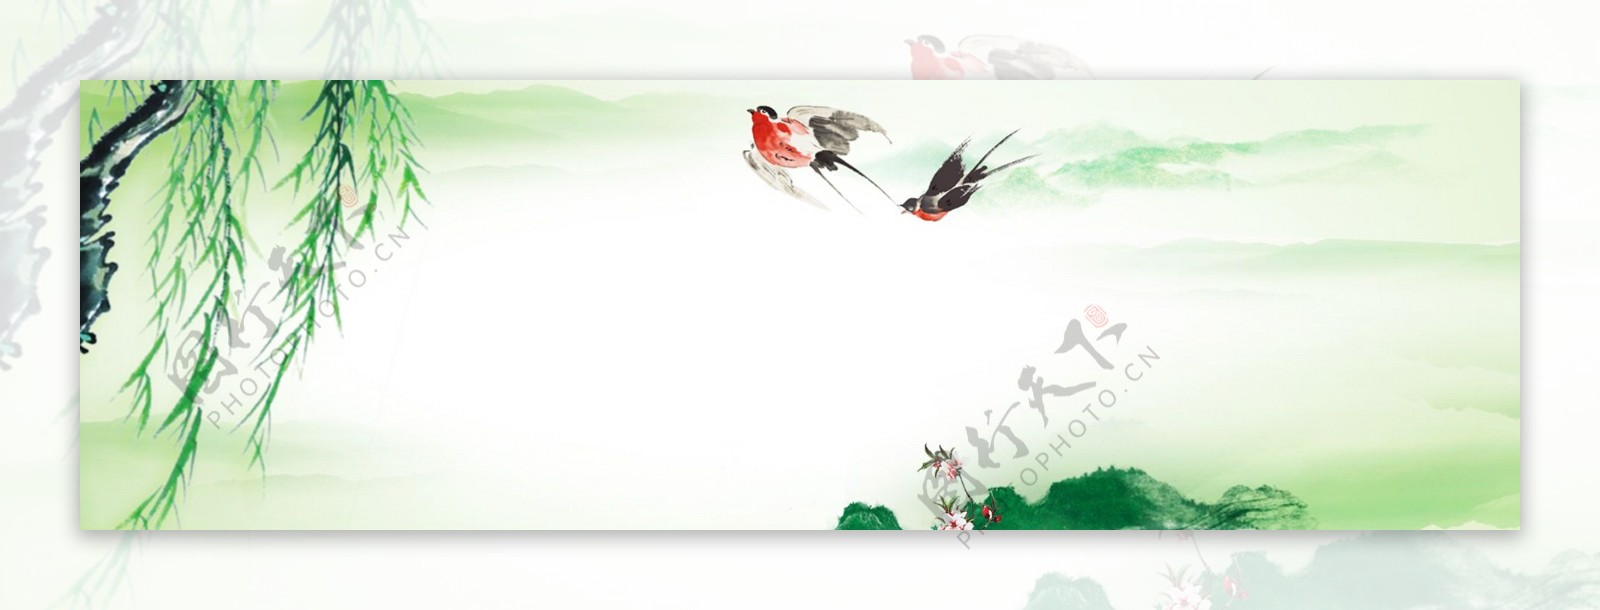 春天绿色柳树燕子背景图